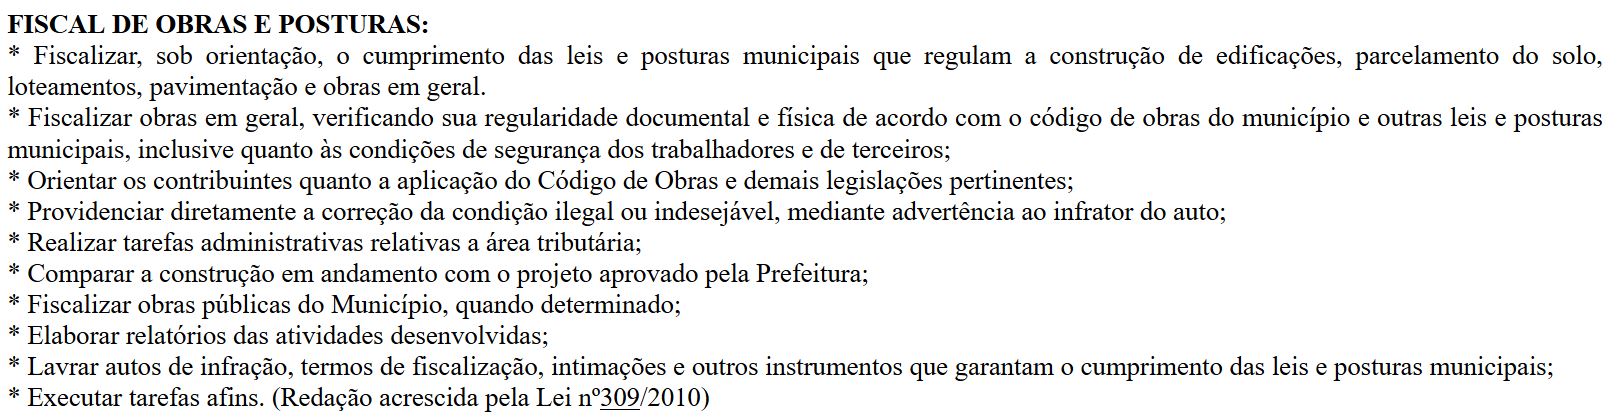 Processo seletivo Prefeitura de Catas Altas - MG, processo seletivo catas altas, prefeitura de catas altas, edital catas altas, concursos mg